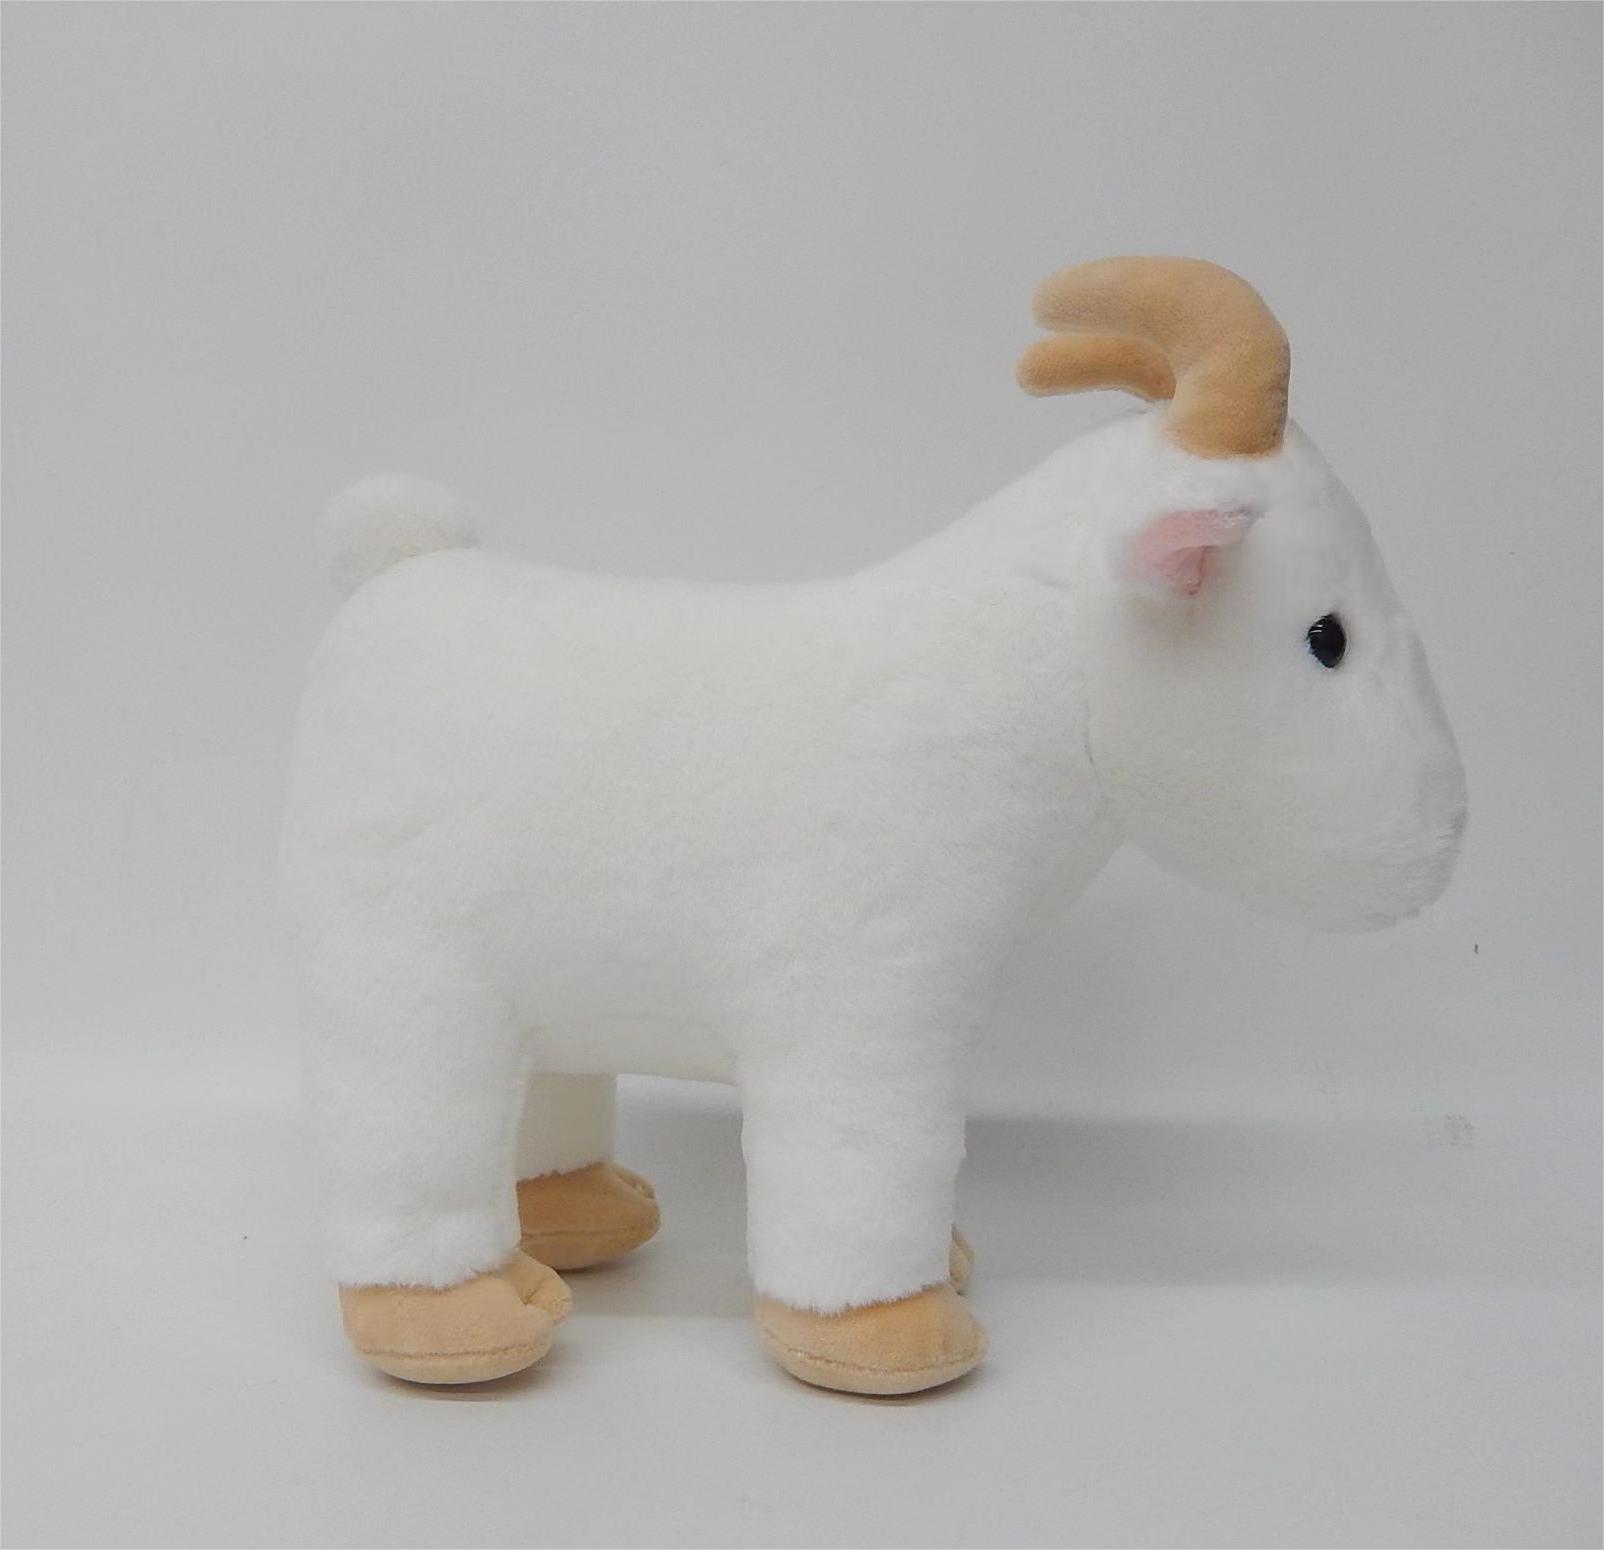  Juguete de peluche de cabra Snuggly, animal de peluche de cabra súper suave de 10 pulgadas, adorable juguete de peluche de cabra para niños y amantes de los animales